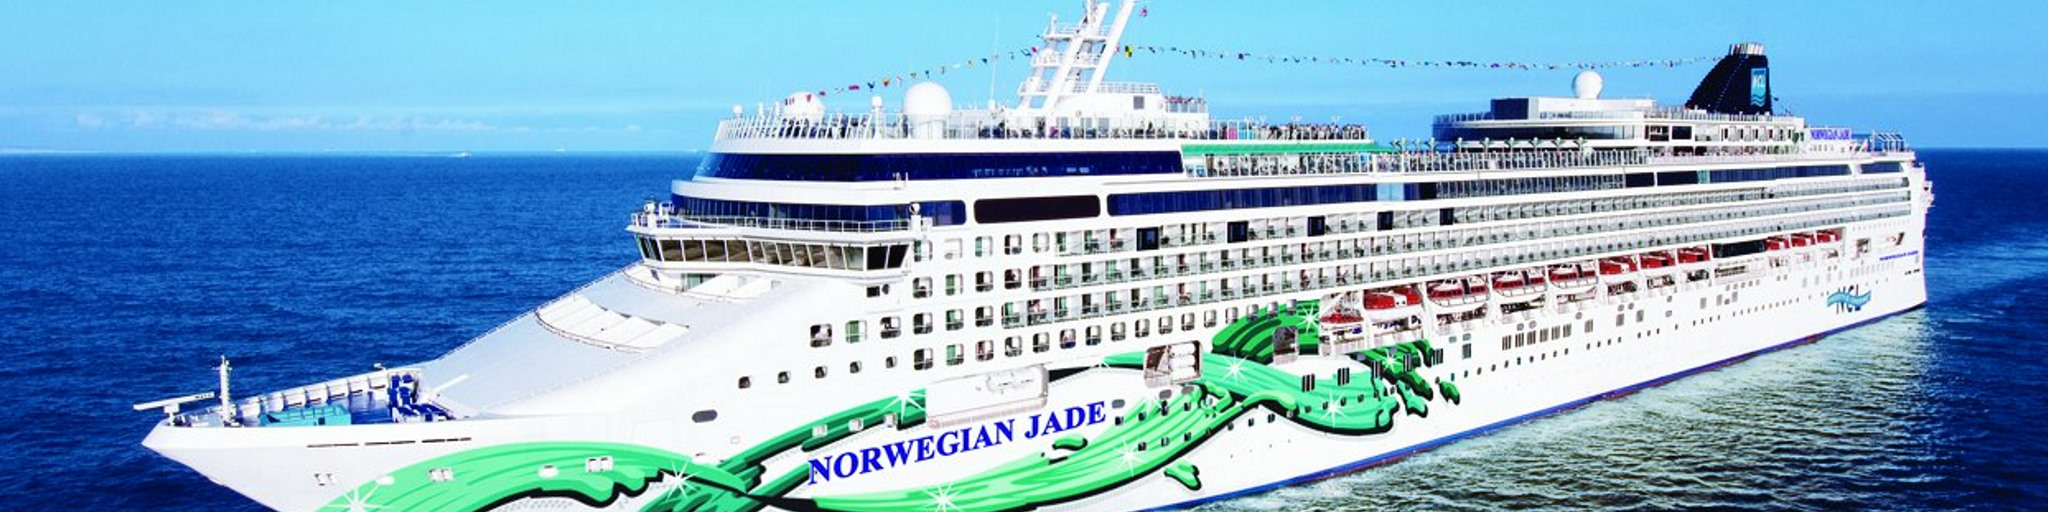 Norwegian Jade